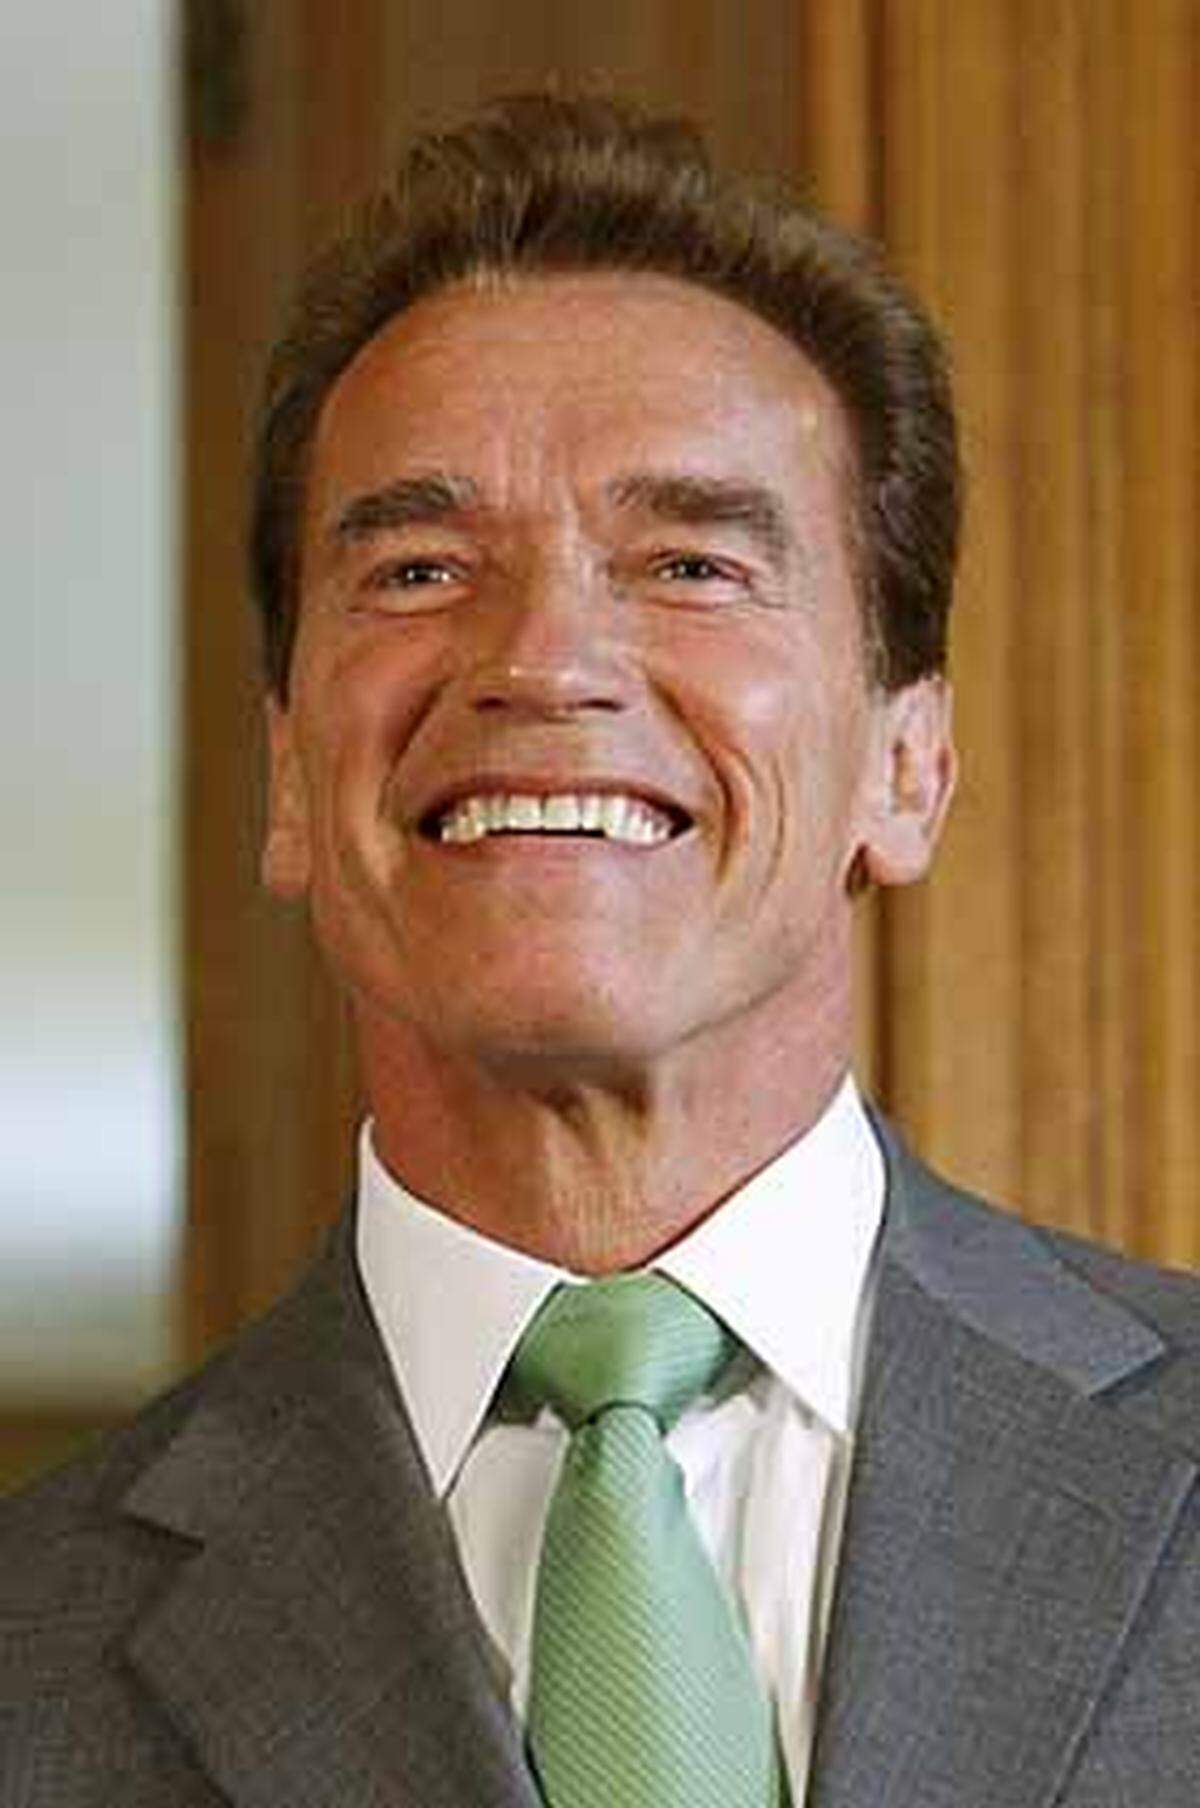 Was wäre ein österreichisches Wachsfigurenkabinett ohne den erfolgreichsten Exportartikel der vergangenen Jahre, ohne die steirische Eiche Arnold Schwarzenegger? Zur Auswahl steht die Darstellung als Terminator oder Gouvernator.